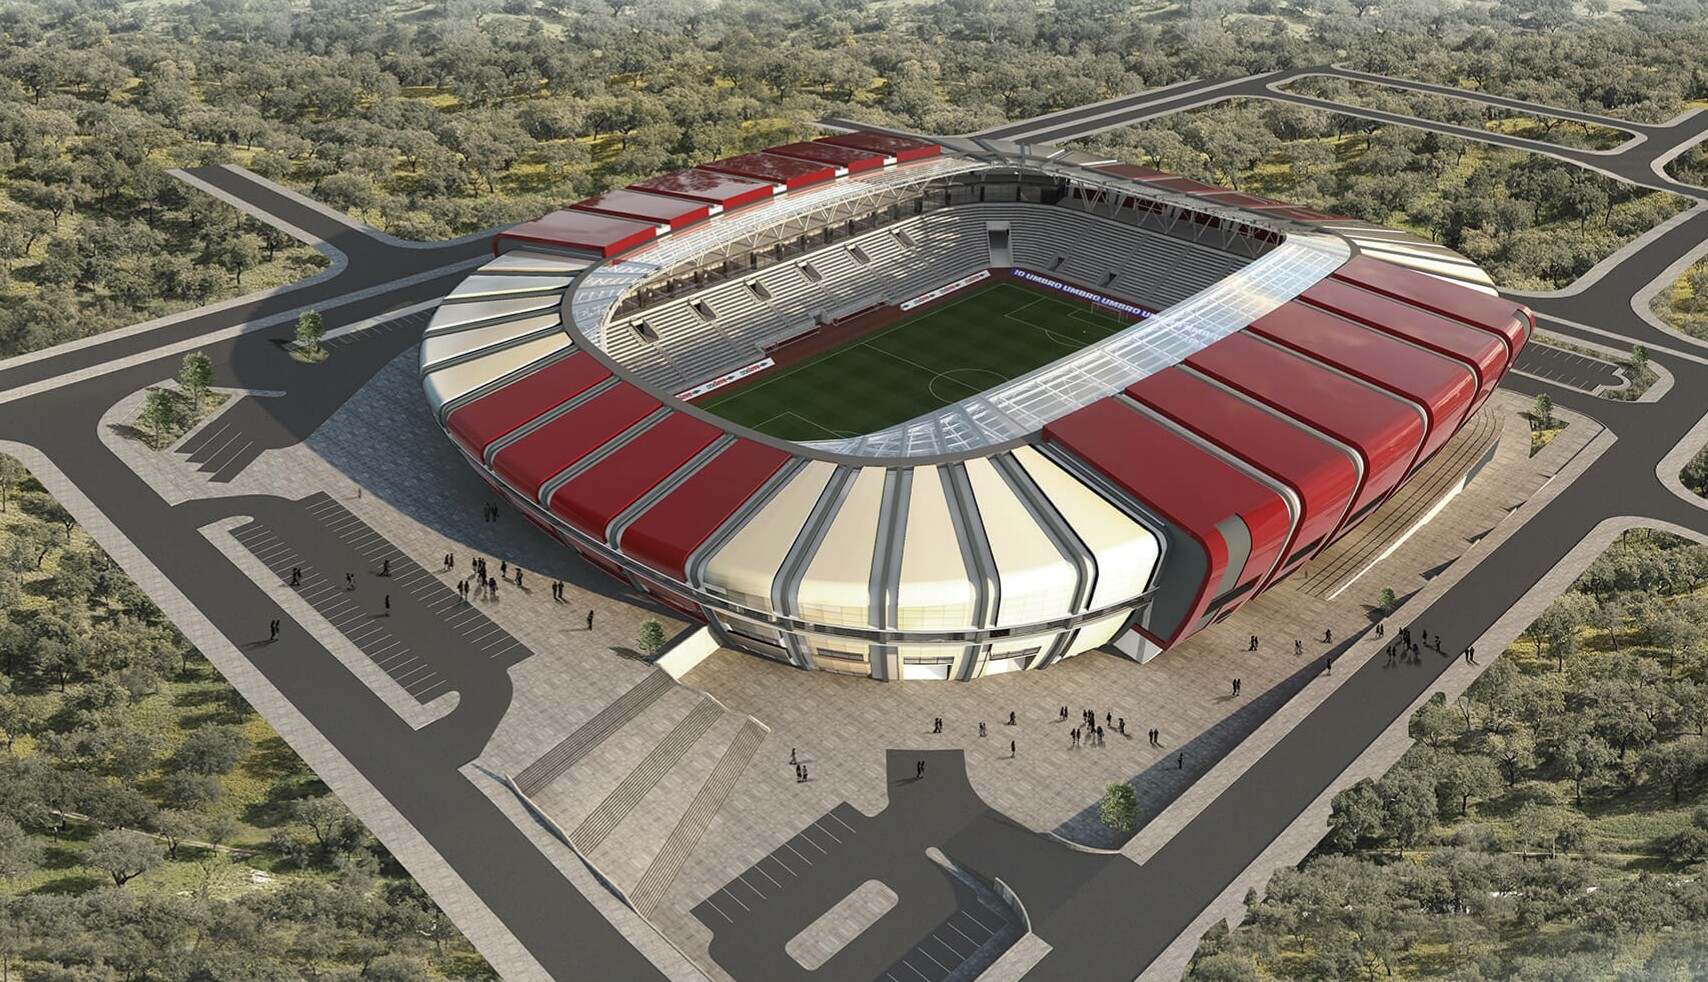 Новый стадион во владикавказе фото